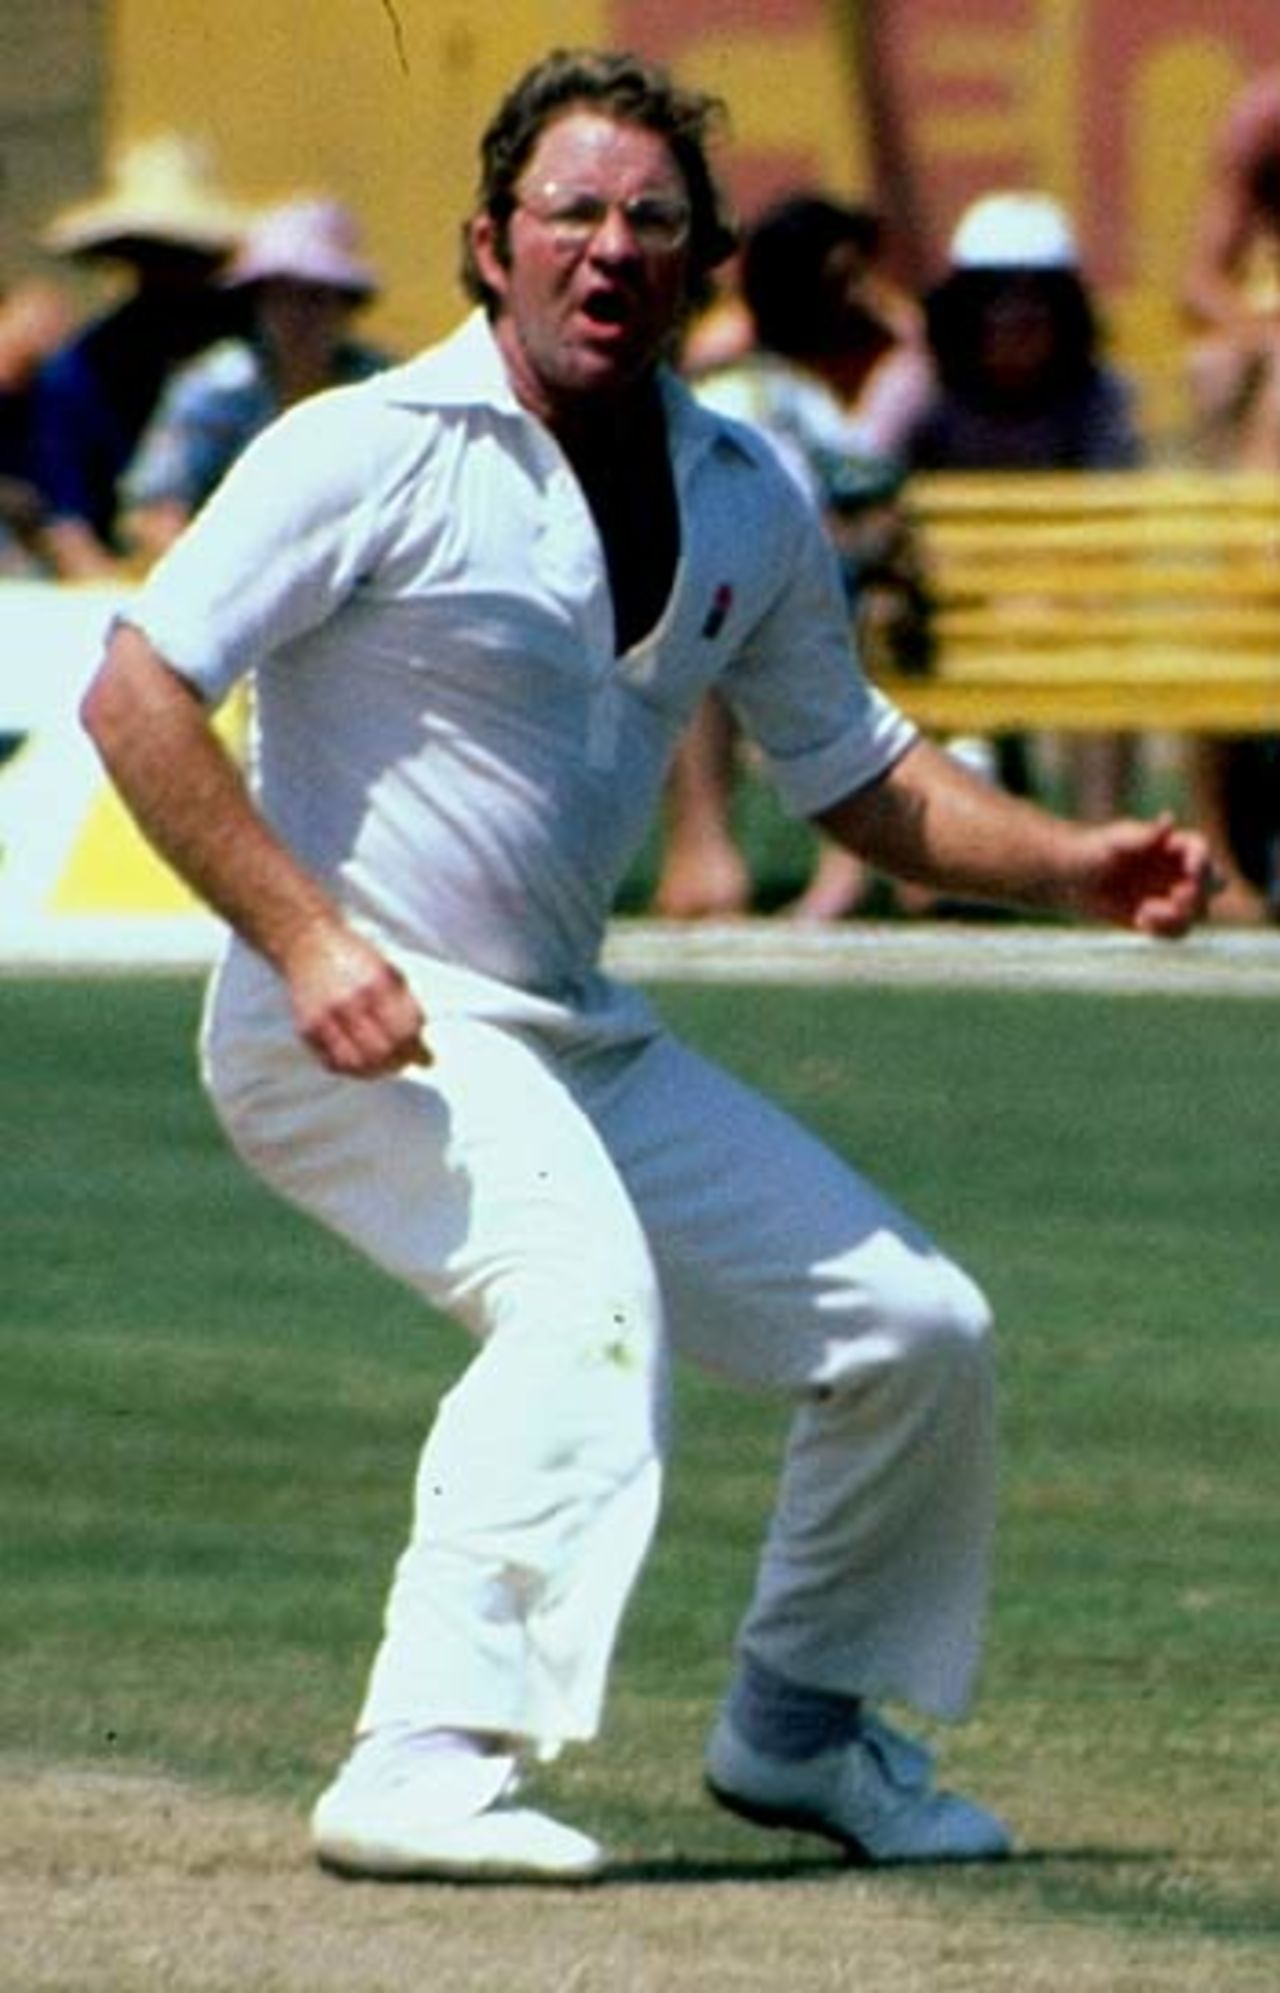 Eddie Barlow in action, June 1979